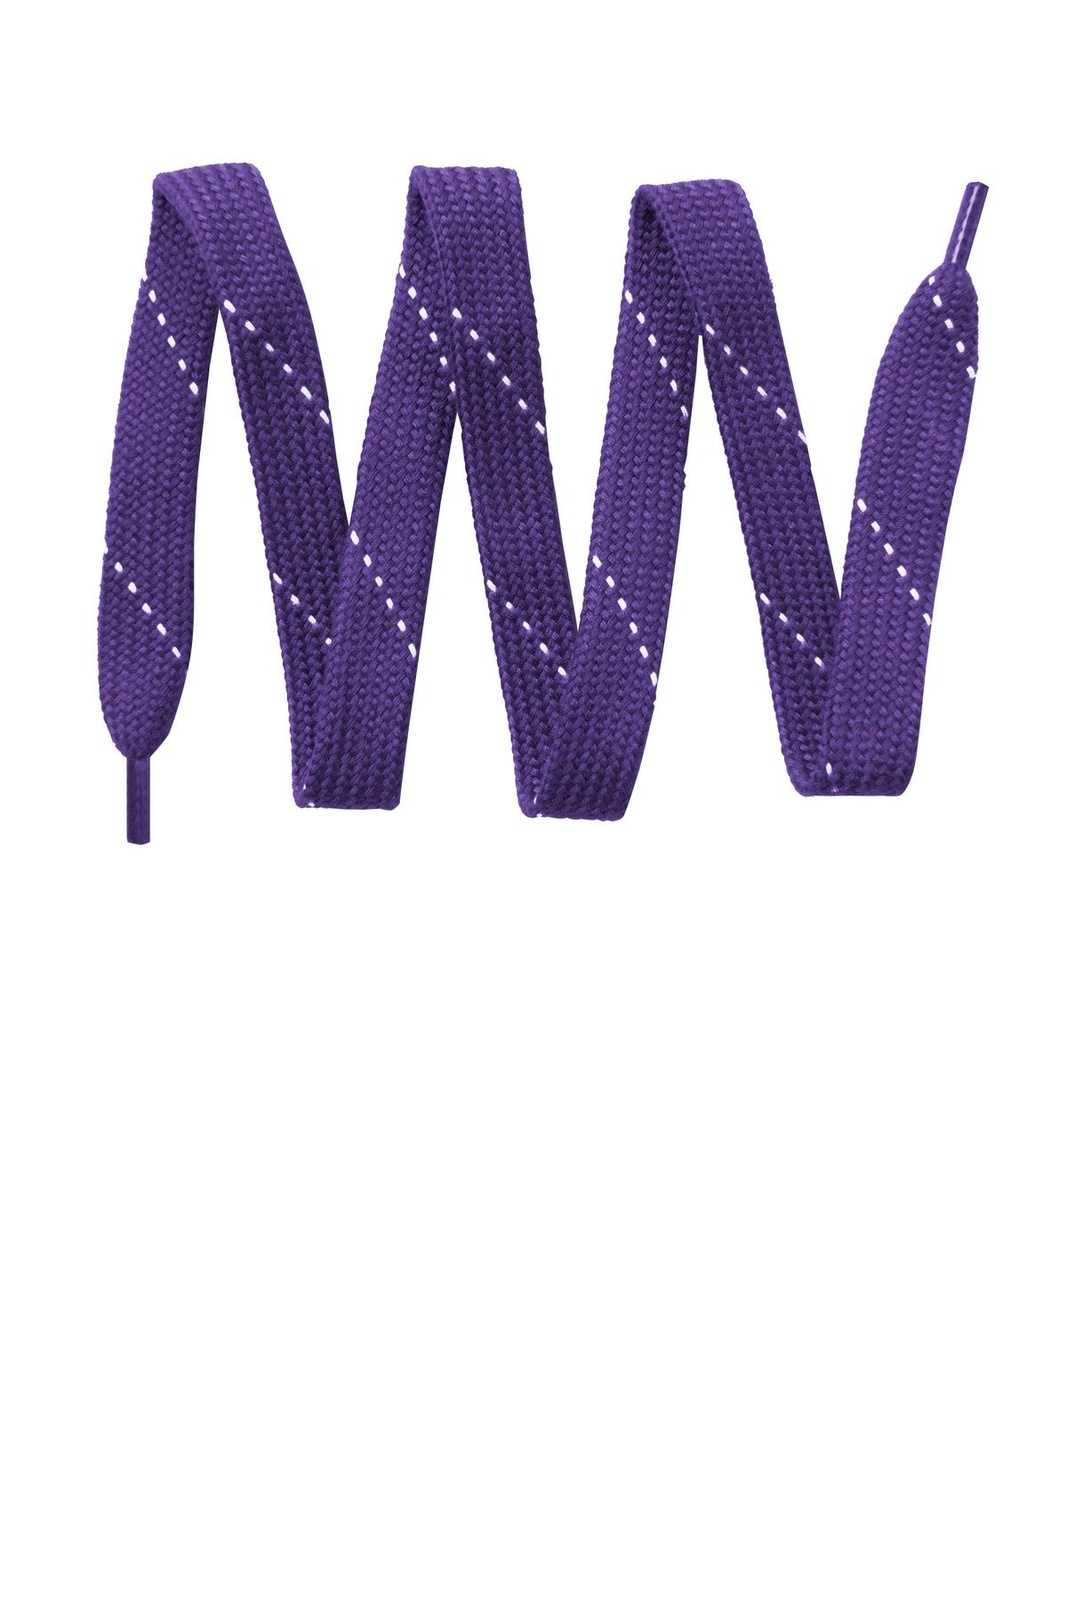 Sport-Tek LACE Laces - Purple White - HIT a Double - 1